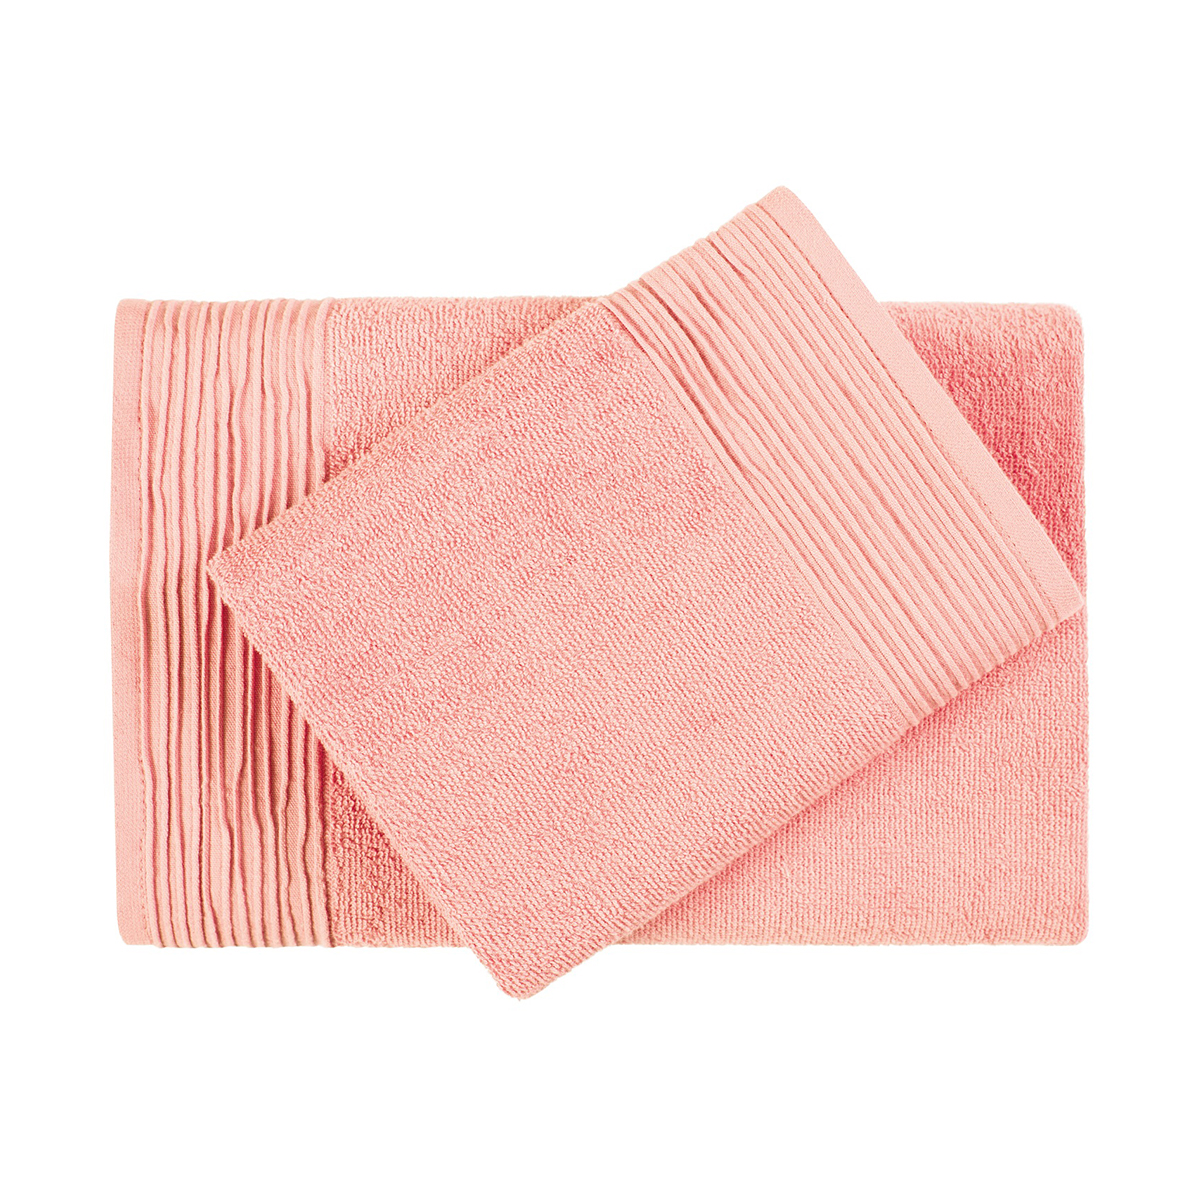 Полотенце "самойловский текстиль" палитра 33*60 см (розово-персиковый)